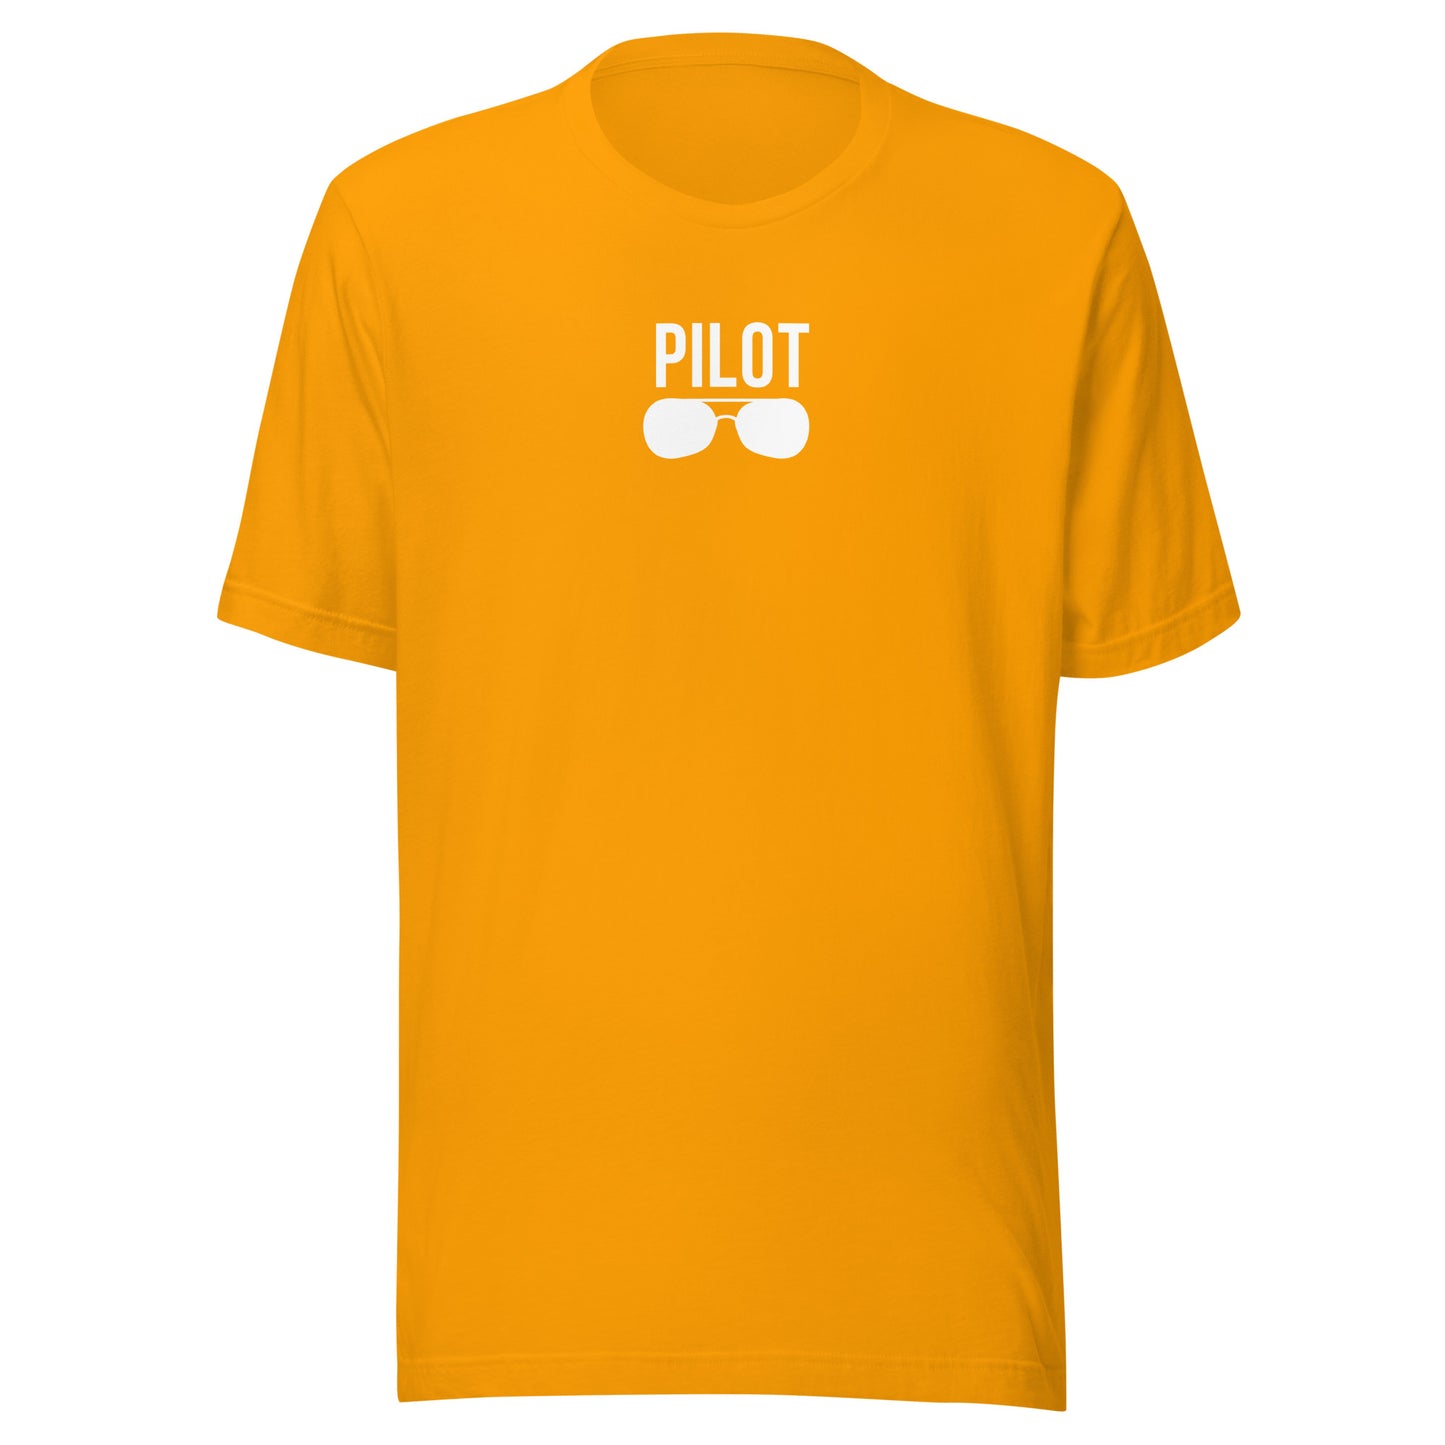 Pilot | Aviation T-Shirt